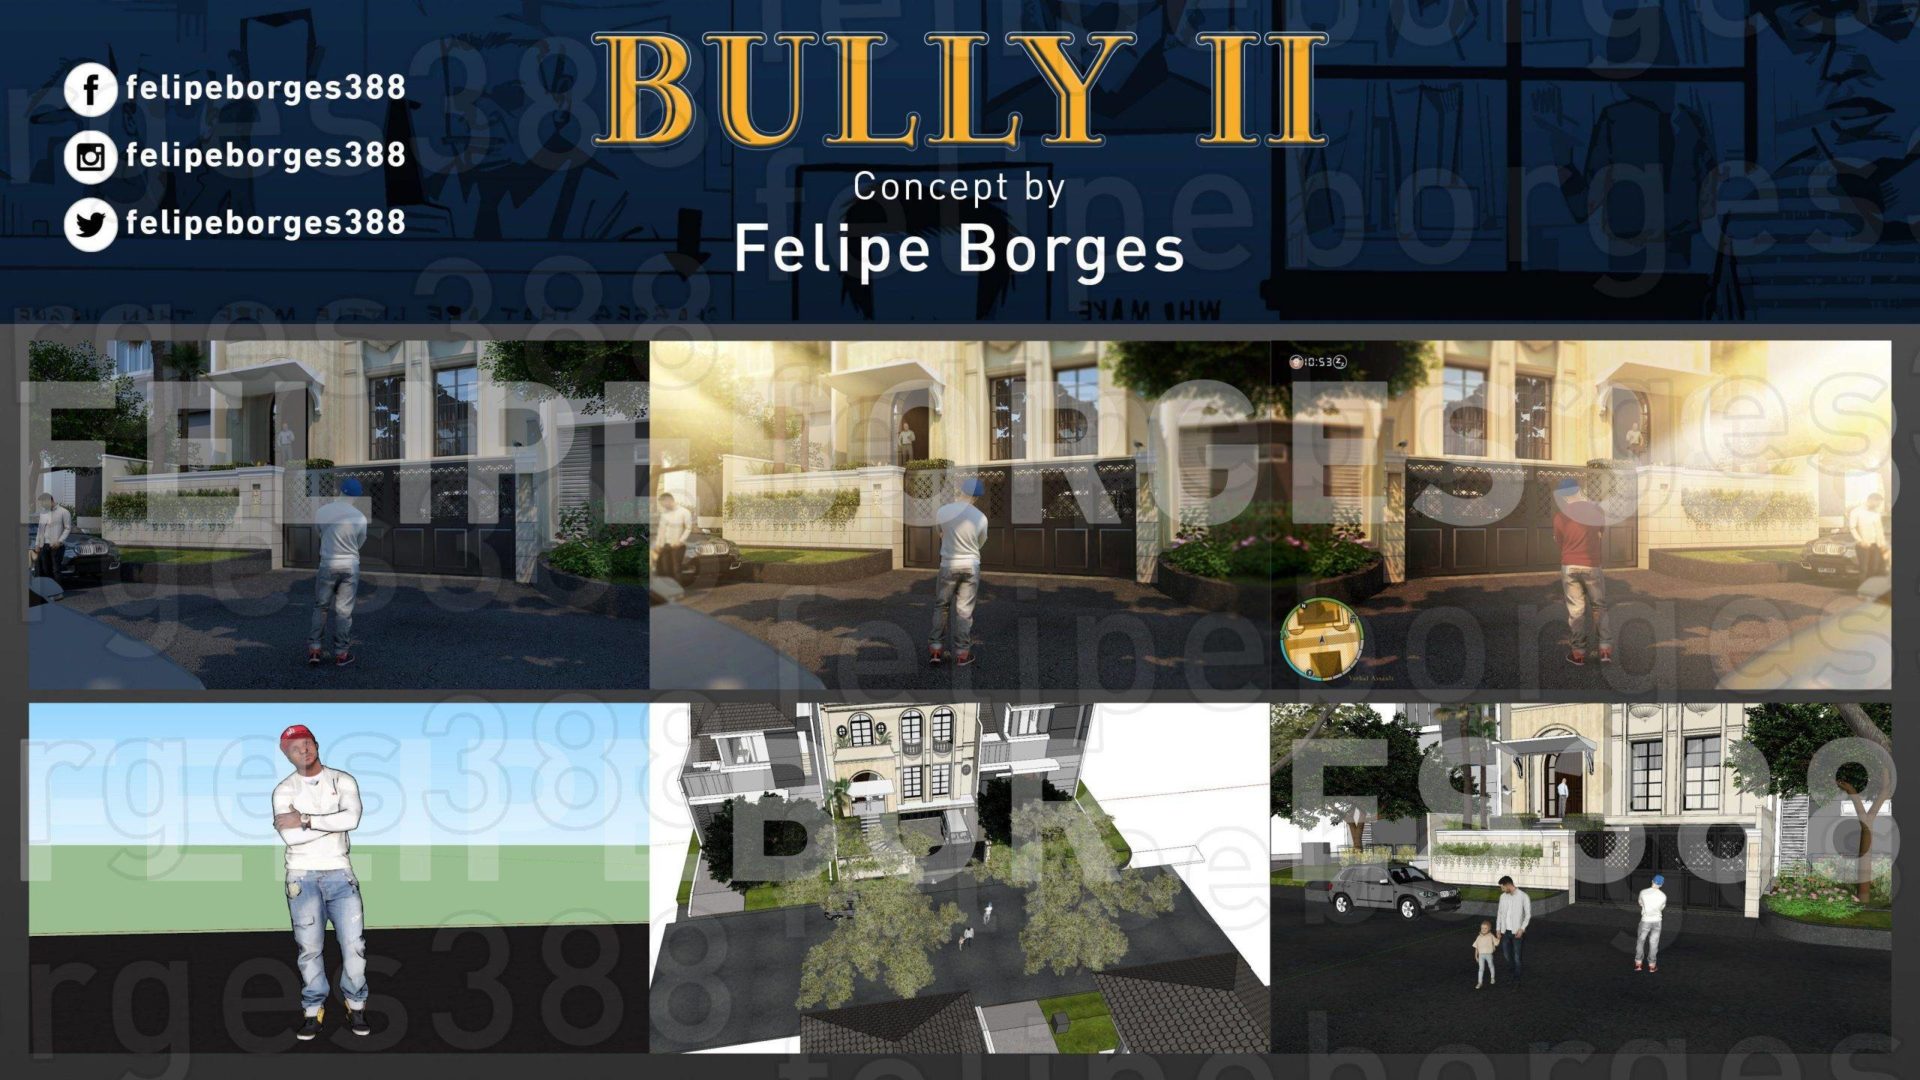 Bully 2 | Brasileiro cria conceito do jogo e acaba "trollando" fãs - Todas as imagens vazadas recentemente são falsas! 2023 Viciados